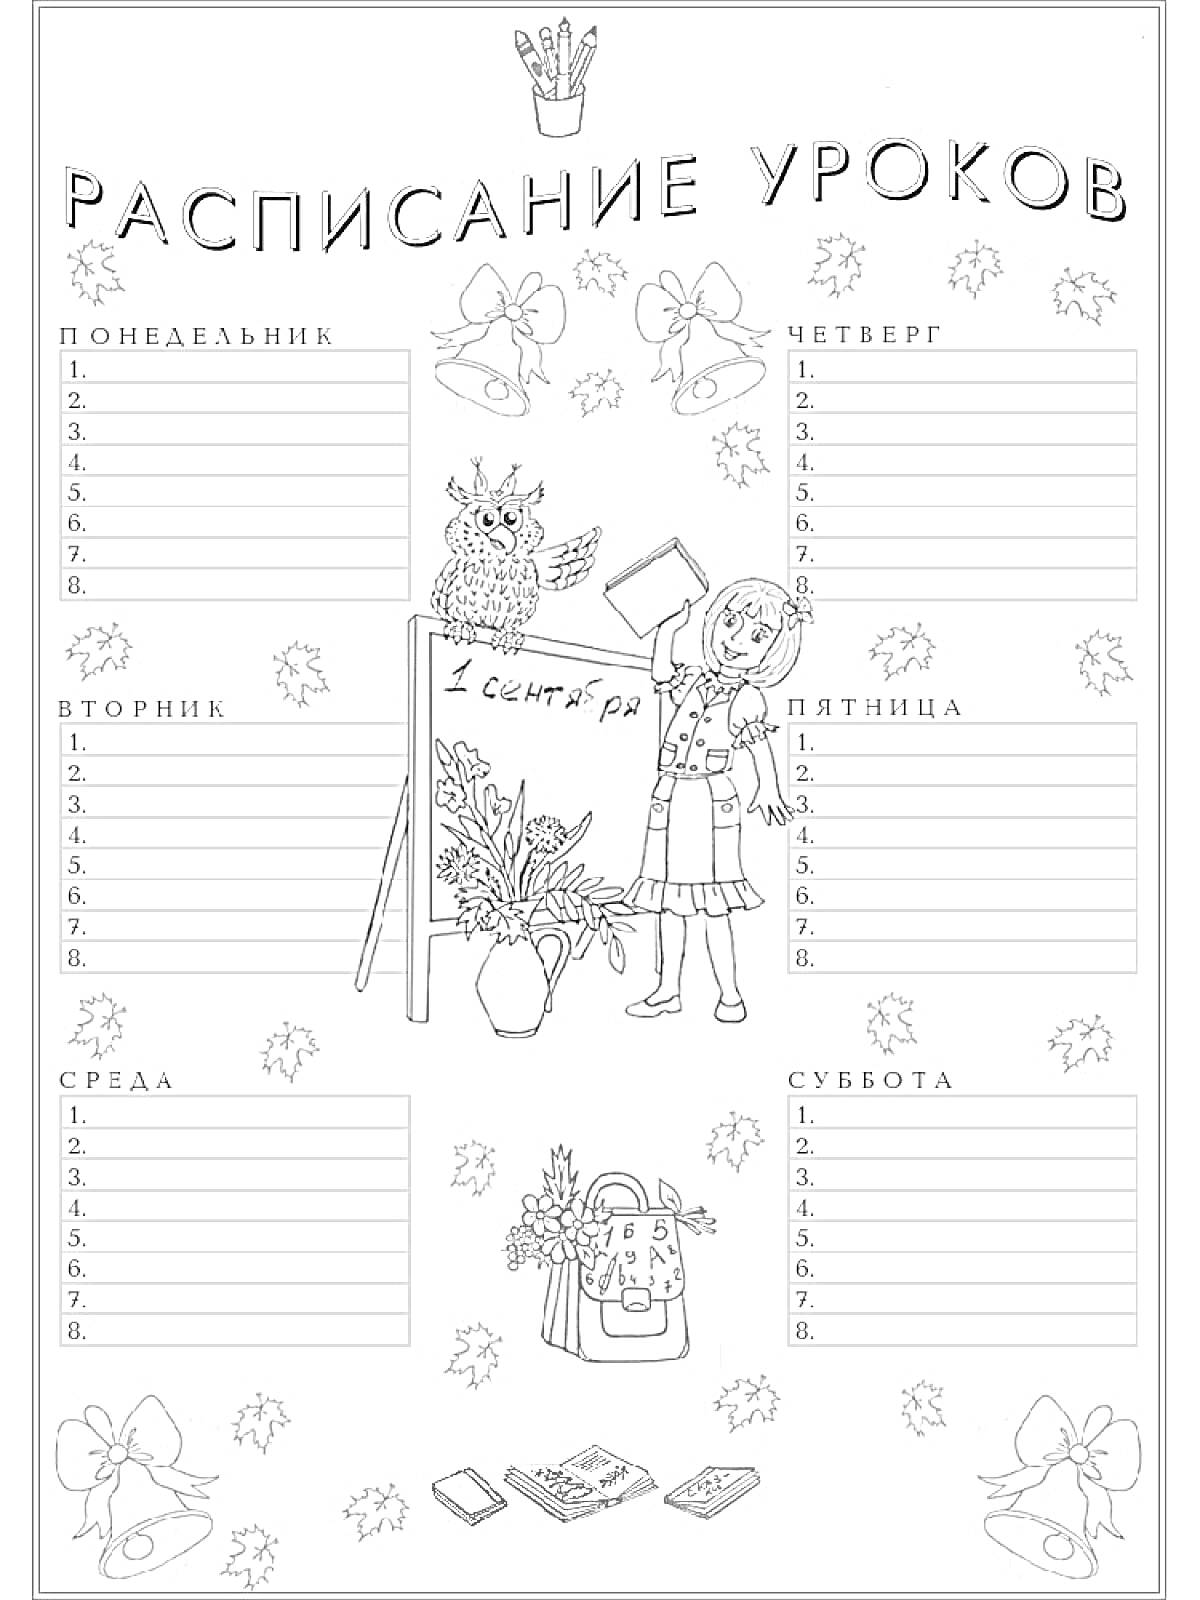 Расписание уроков c изображением учителя, совы, школьной доски, рюкзака и цветов